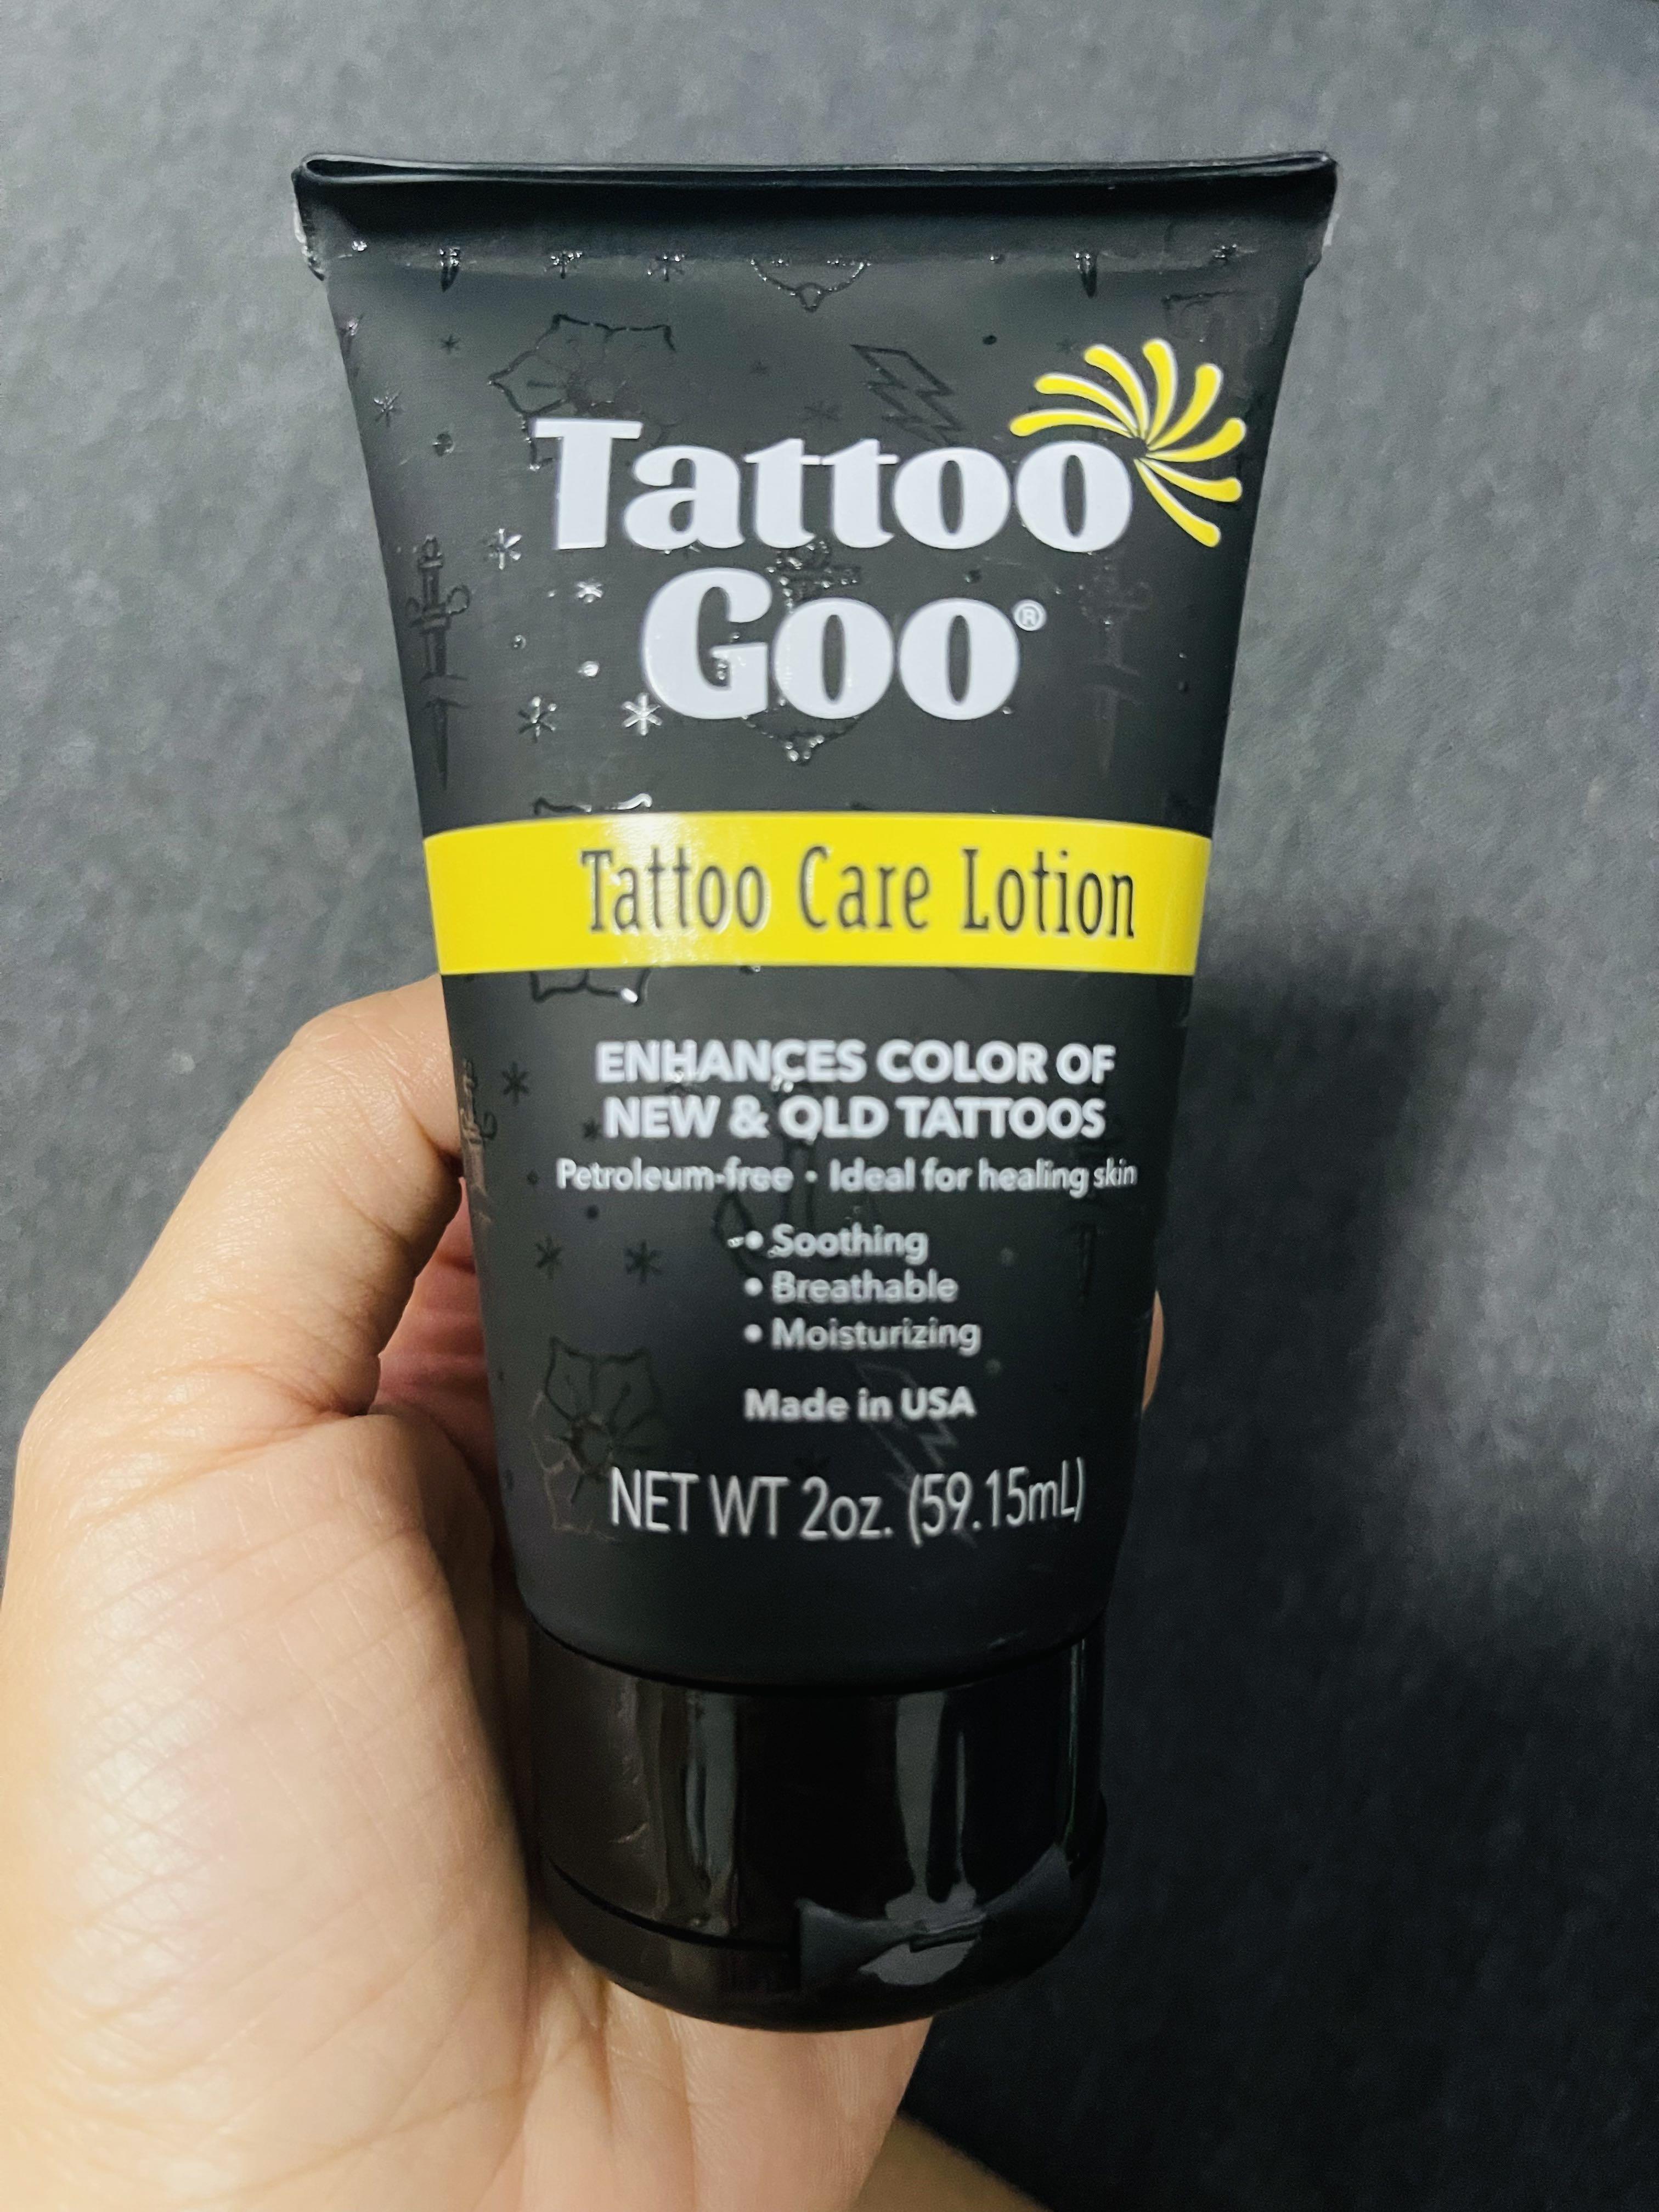 How much Aquaphor should I put on a tattoo? - Quora